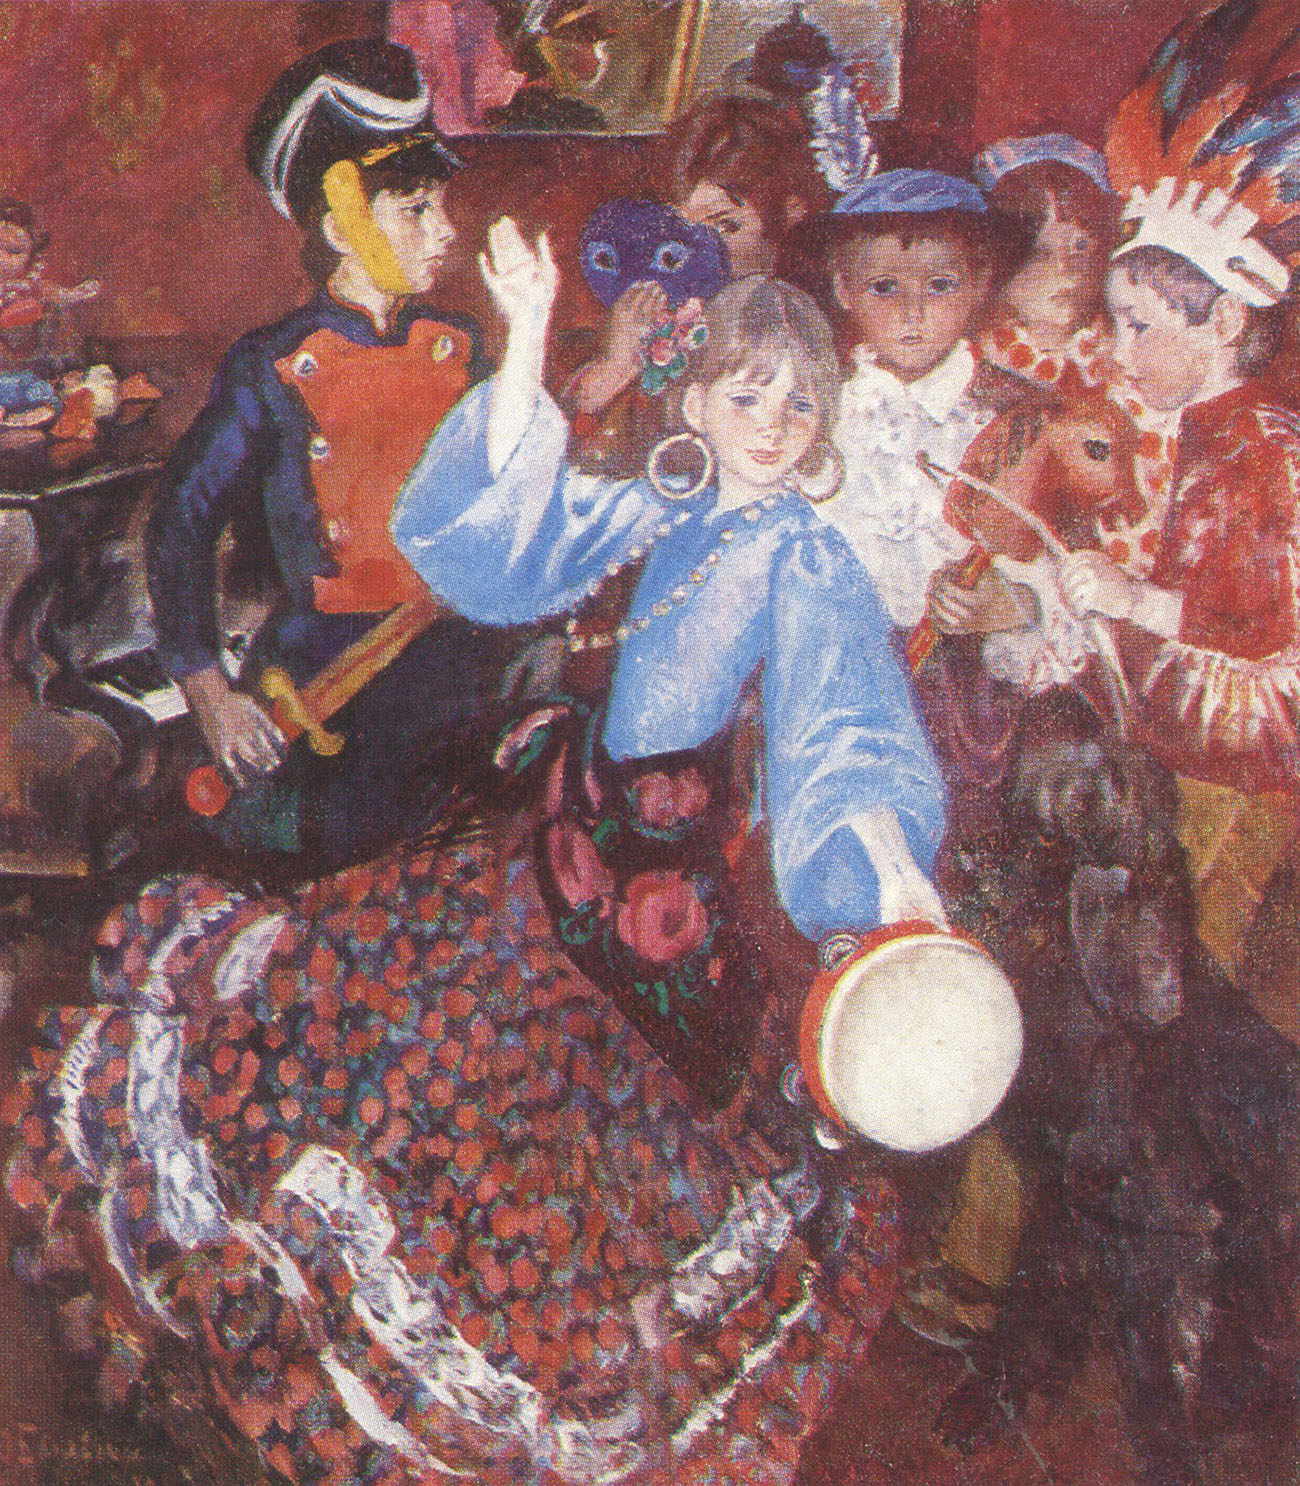 О. Богаевская. "Детский праздник". 1980.